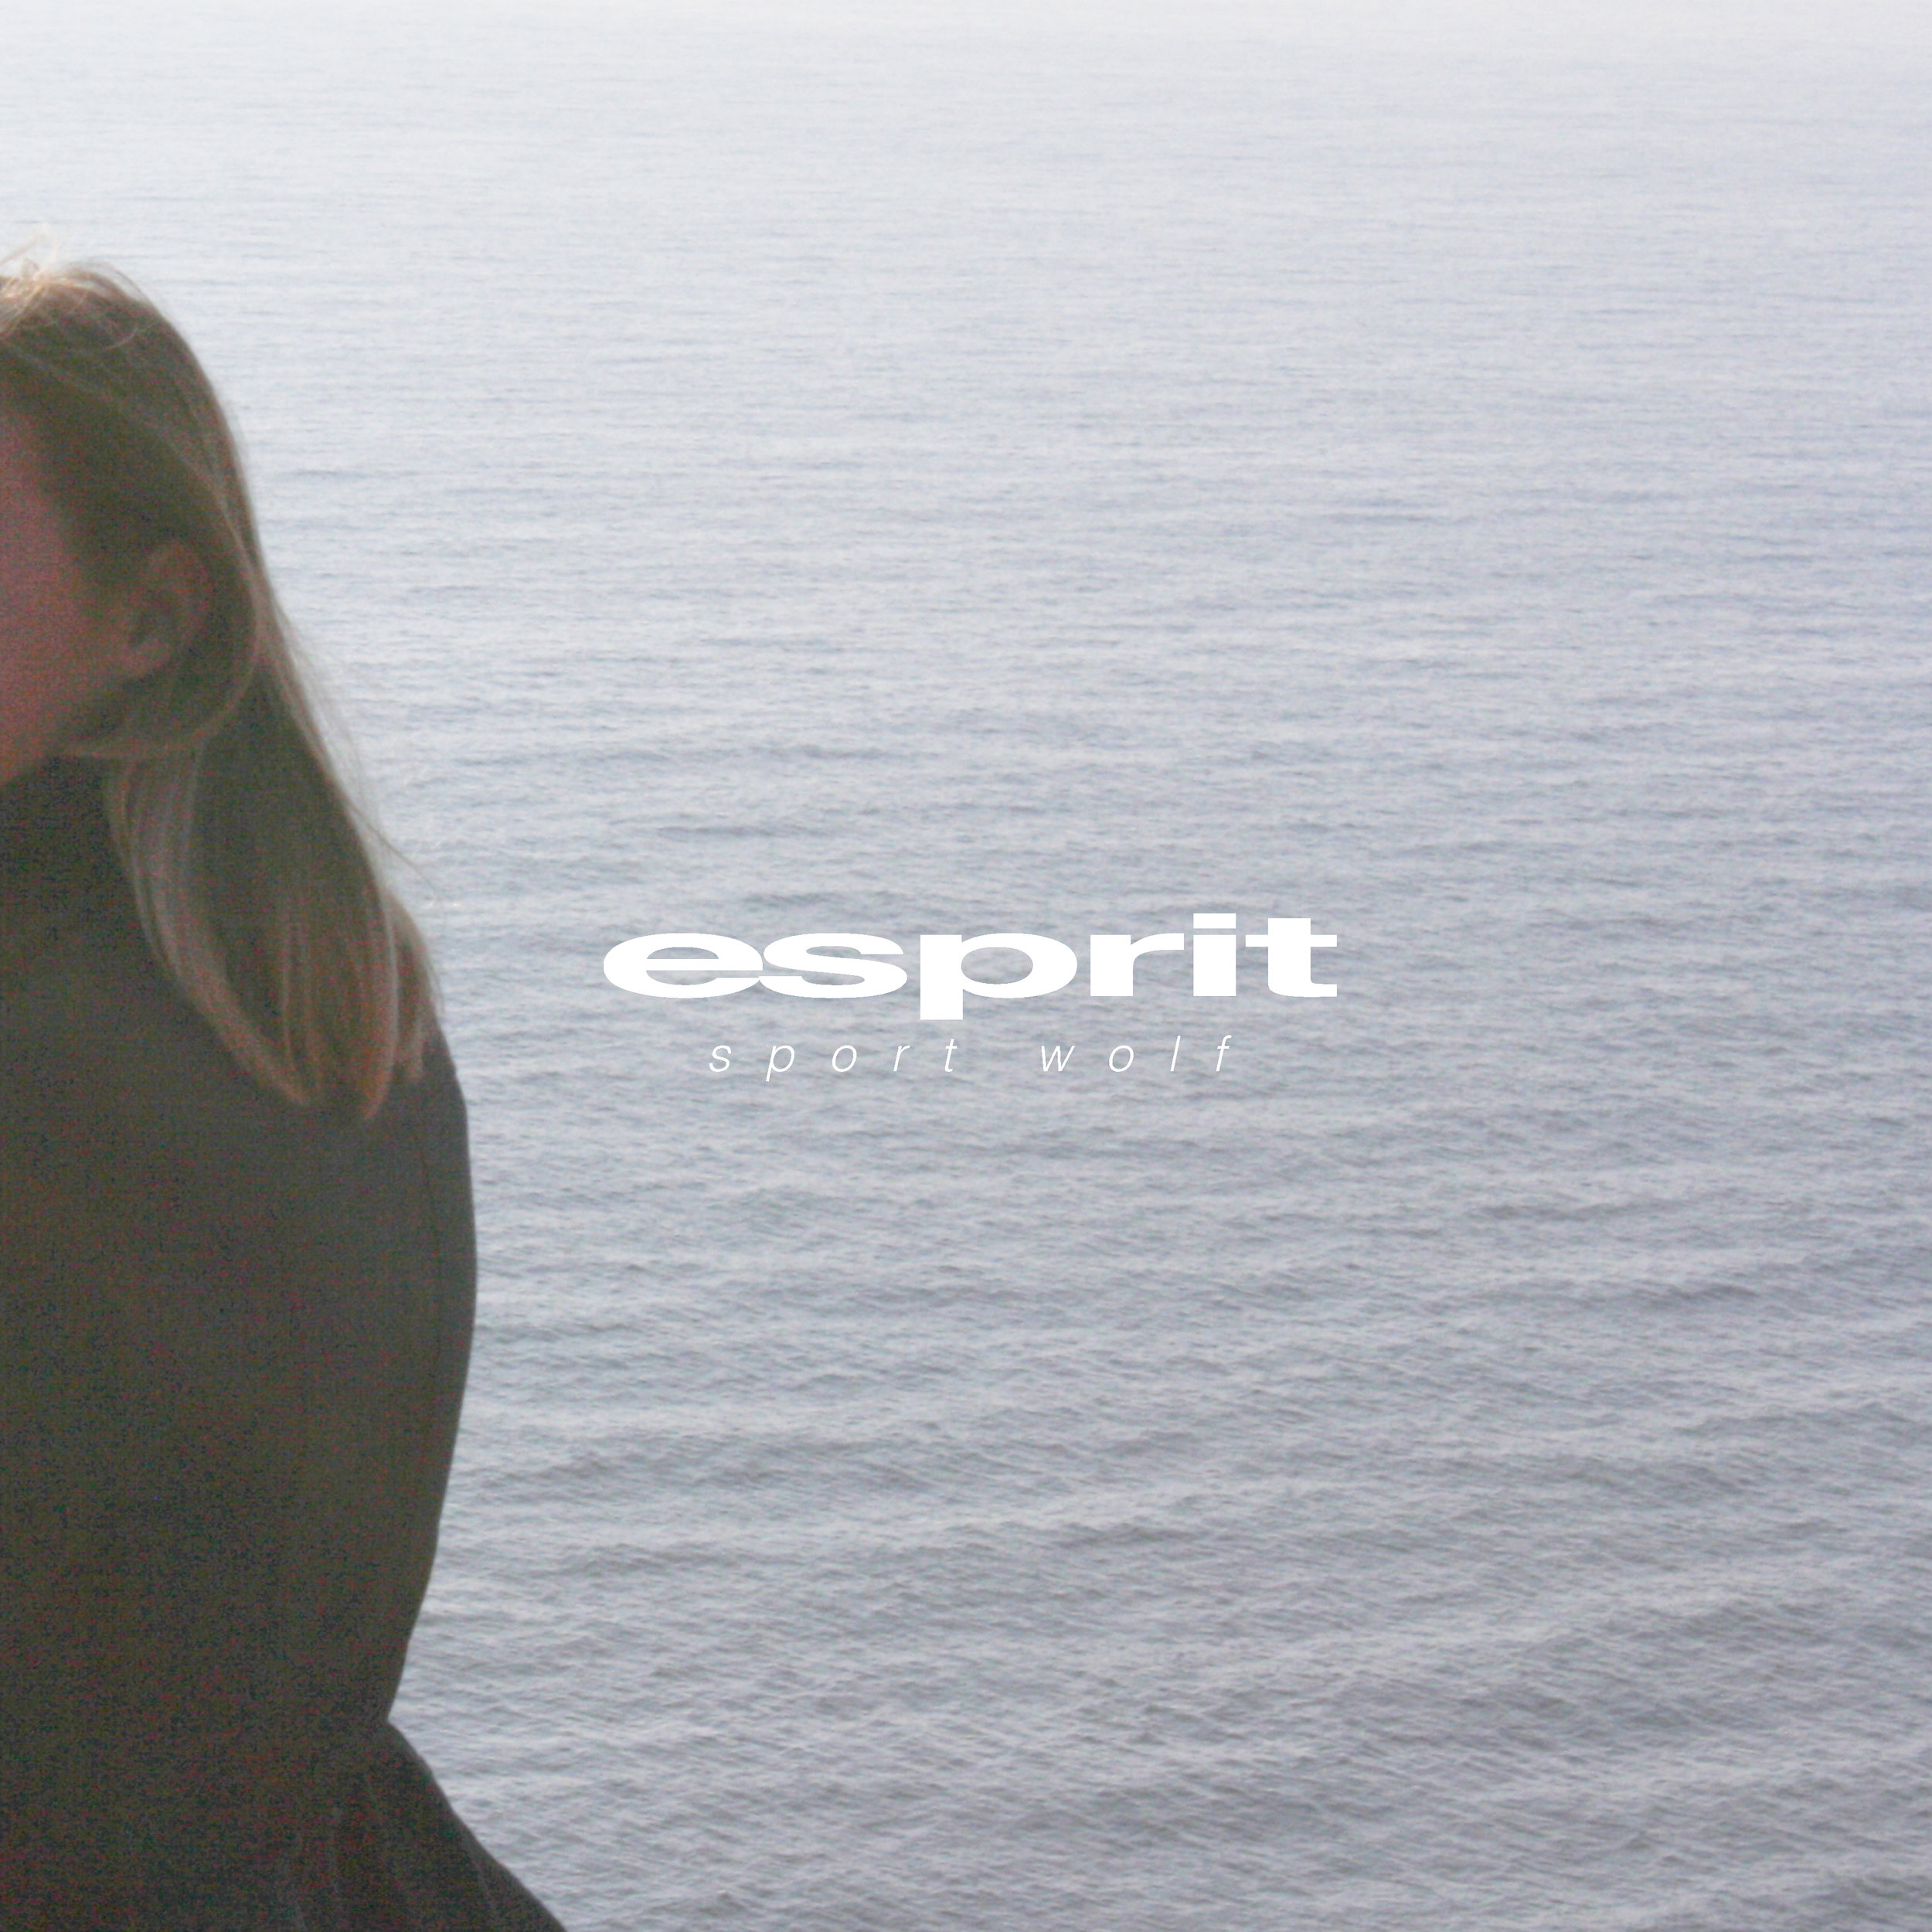 Sport Wolf - Esprit – $3.00